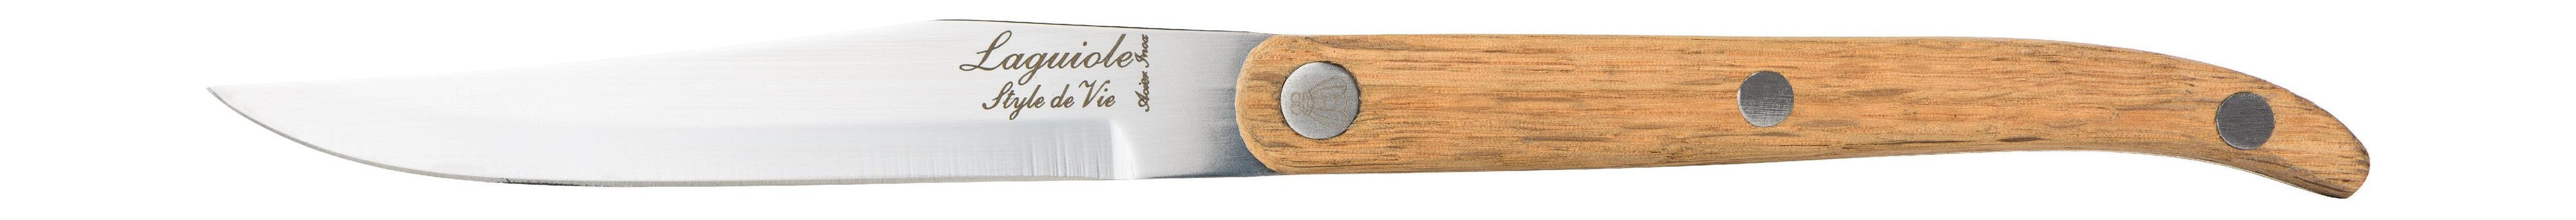 Style De Vie Authentique Laguiole Innovation Line Bøfknive 6-delt sæt egetræ, glat klinge